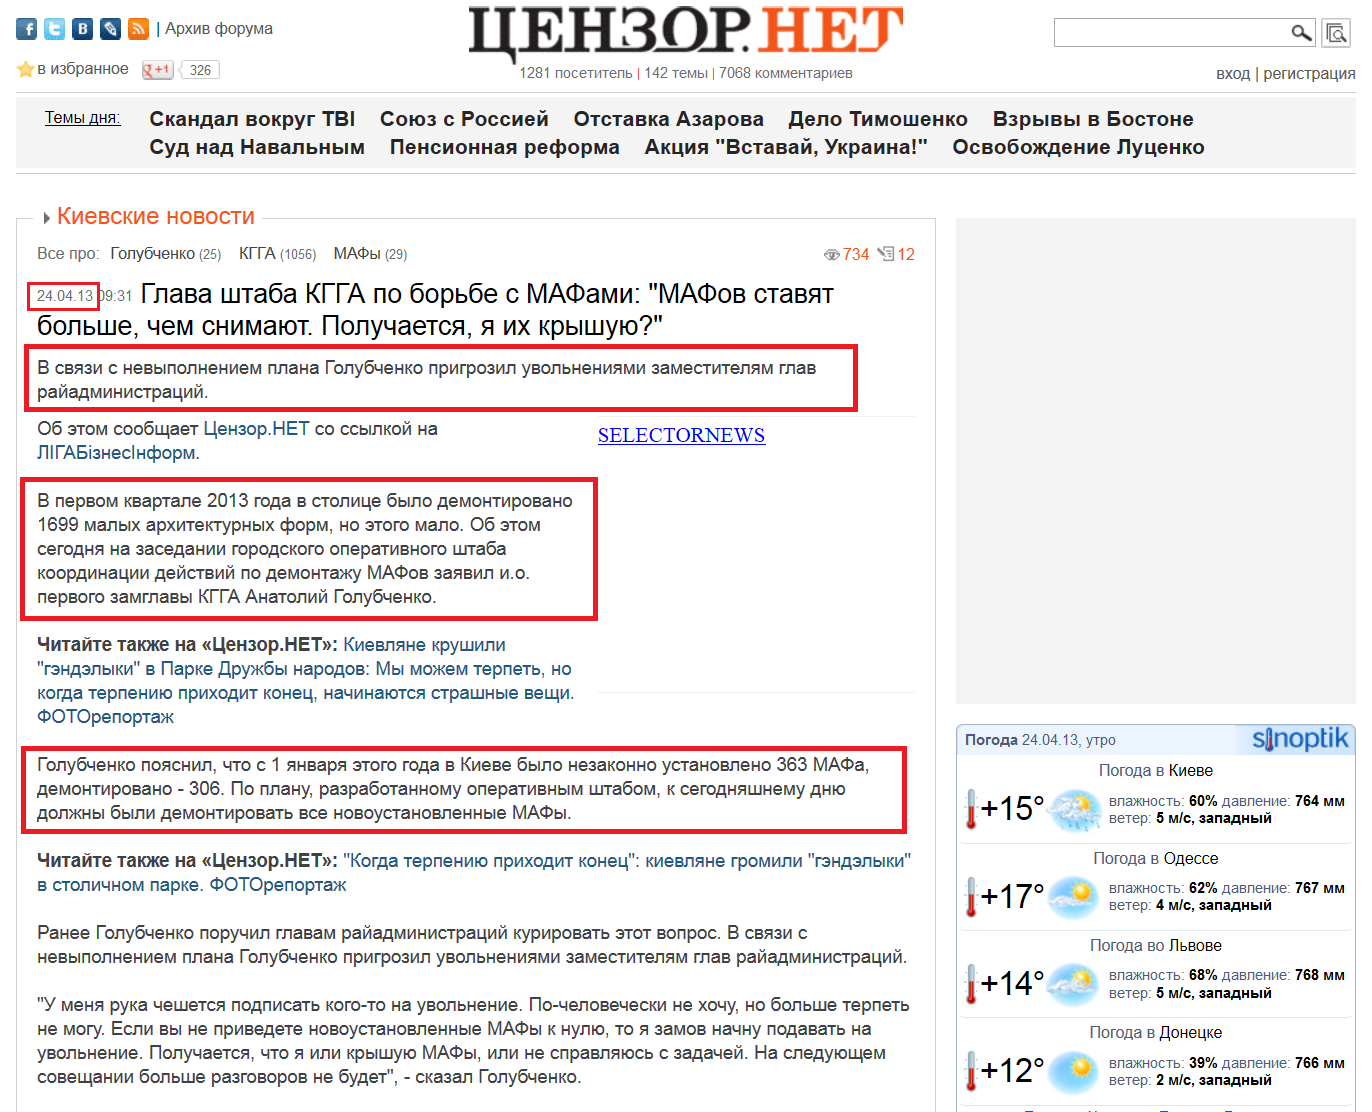 http://censor.net.ua/news/240016/glava_shtaba_kgga_po_borbe_s_mafami_mafov_stavyat_bolshe_chem_snimayut_poluchaetsya_ya_ih_kryshuyu